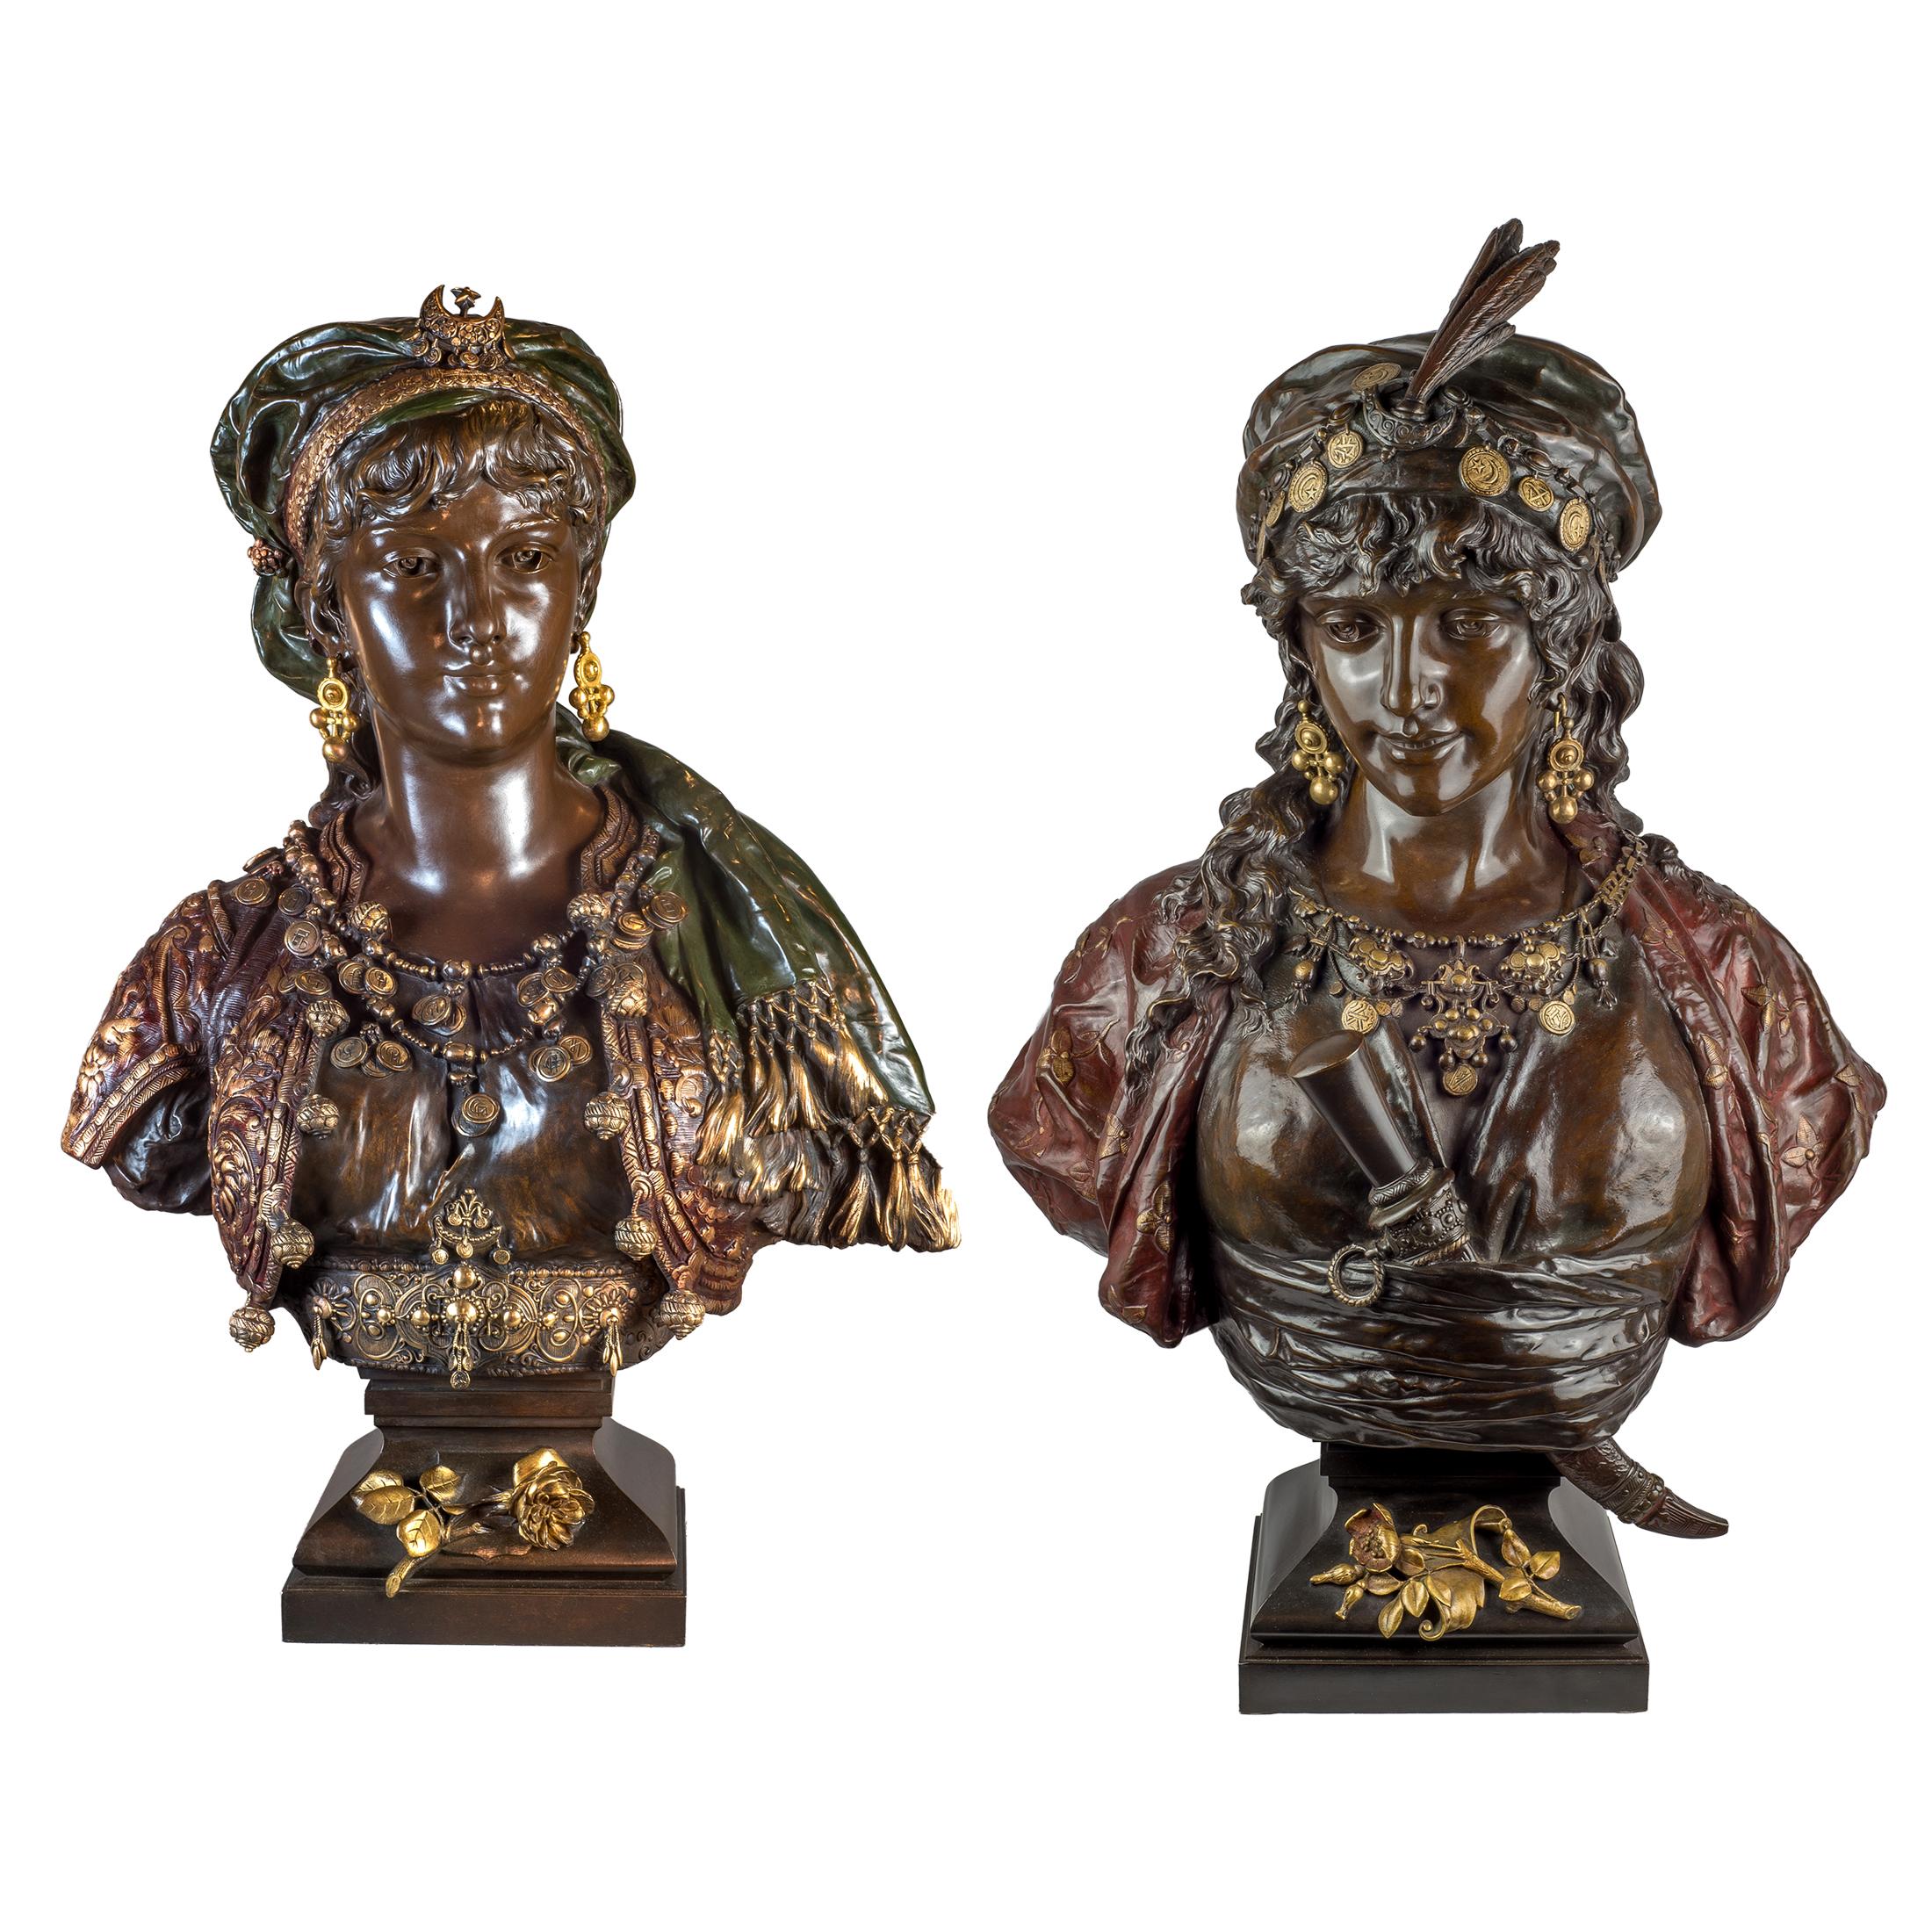 Pareja de bustos de princesas orientalistas en bronce dorado y patinado policromado